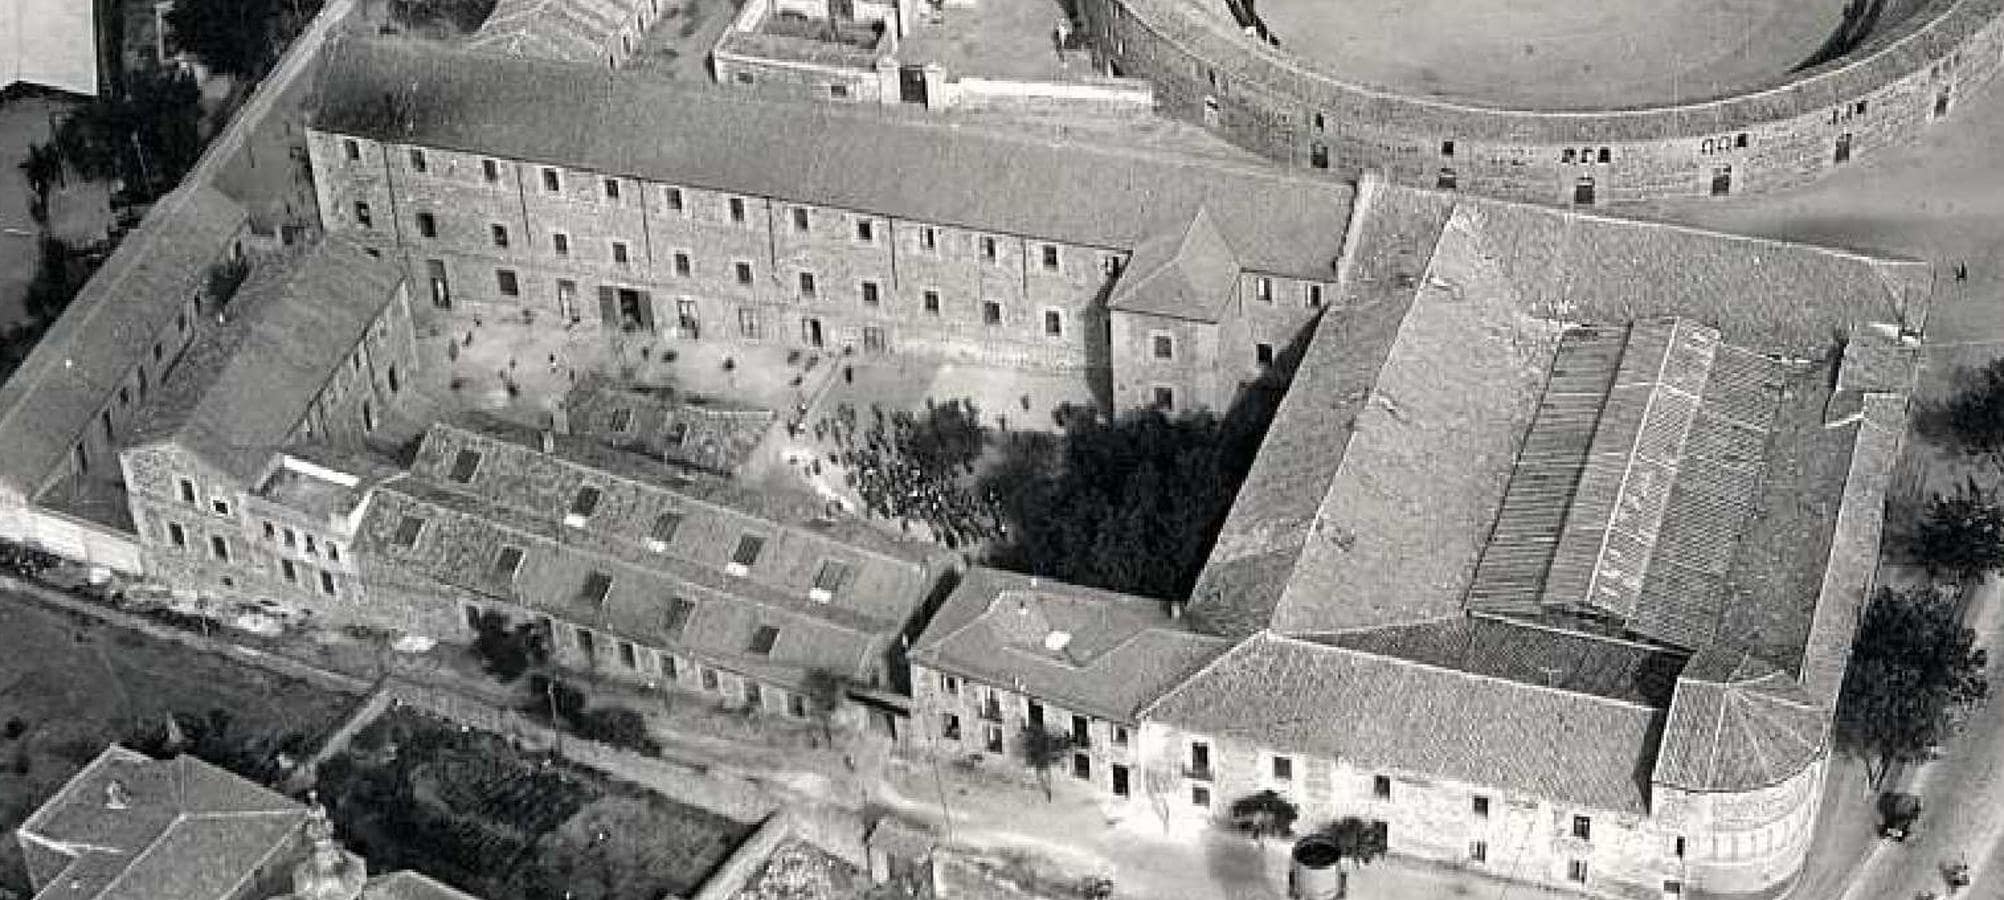 Vista aérea del Colegio hacia 1932. A la derecha, el núcleo de San Lázaro. A la izquierda, los pabellones levantados desde 1895. Archivo Municipal de Toledo. 